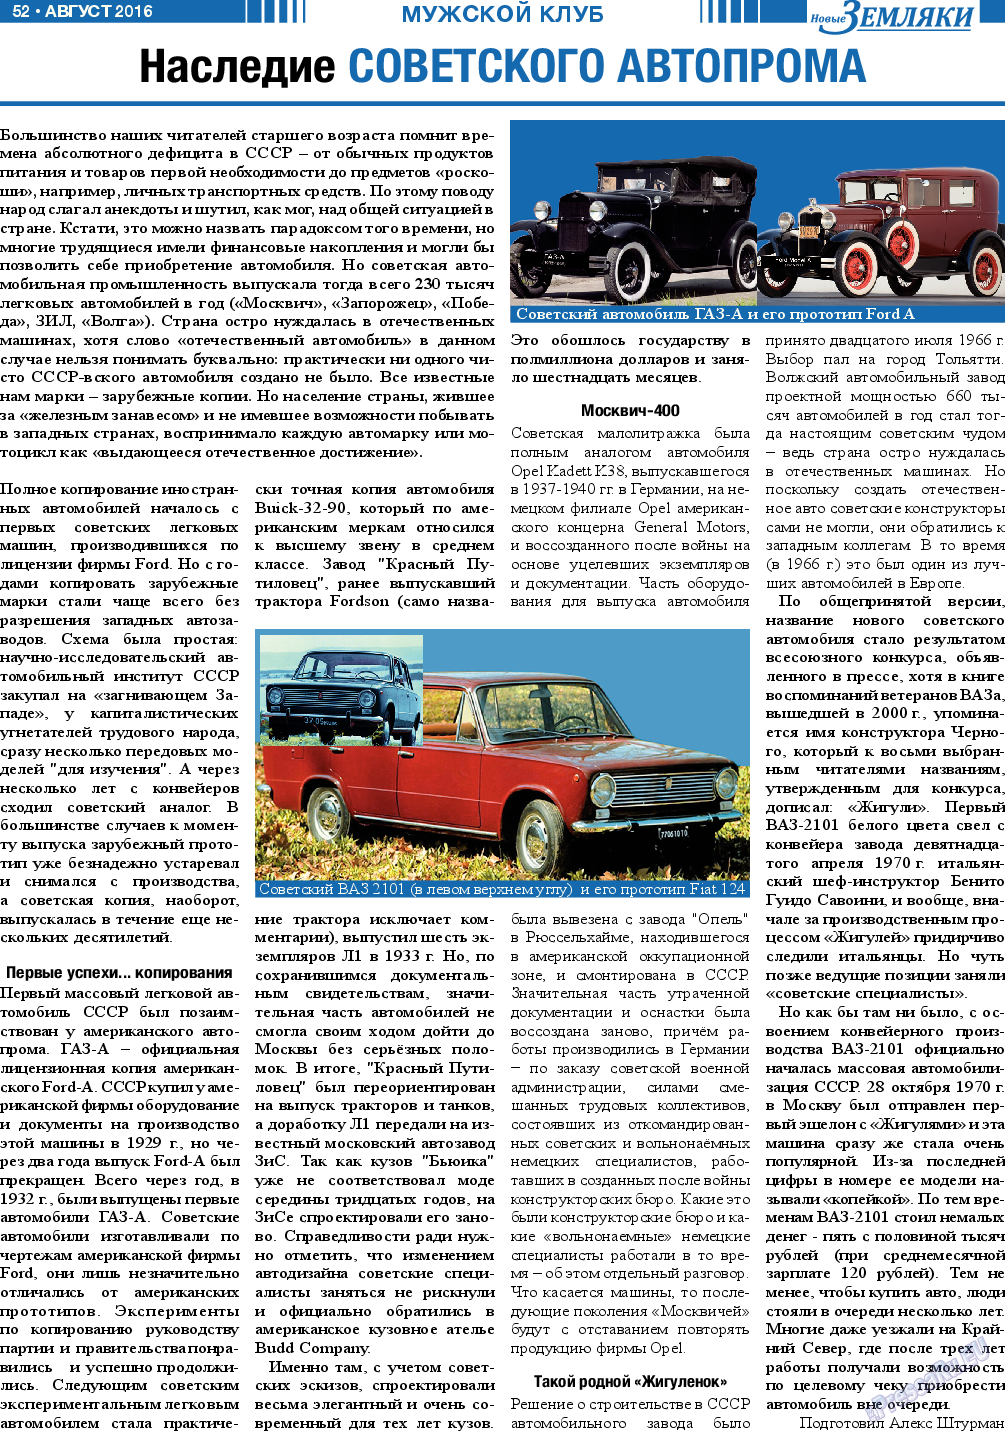 Новые Земляки, газета. 2016 №8 стр.52